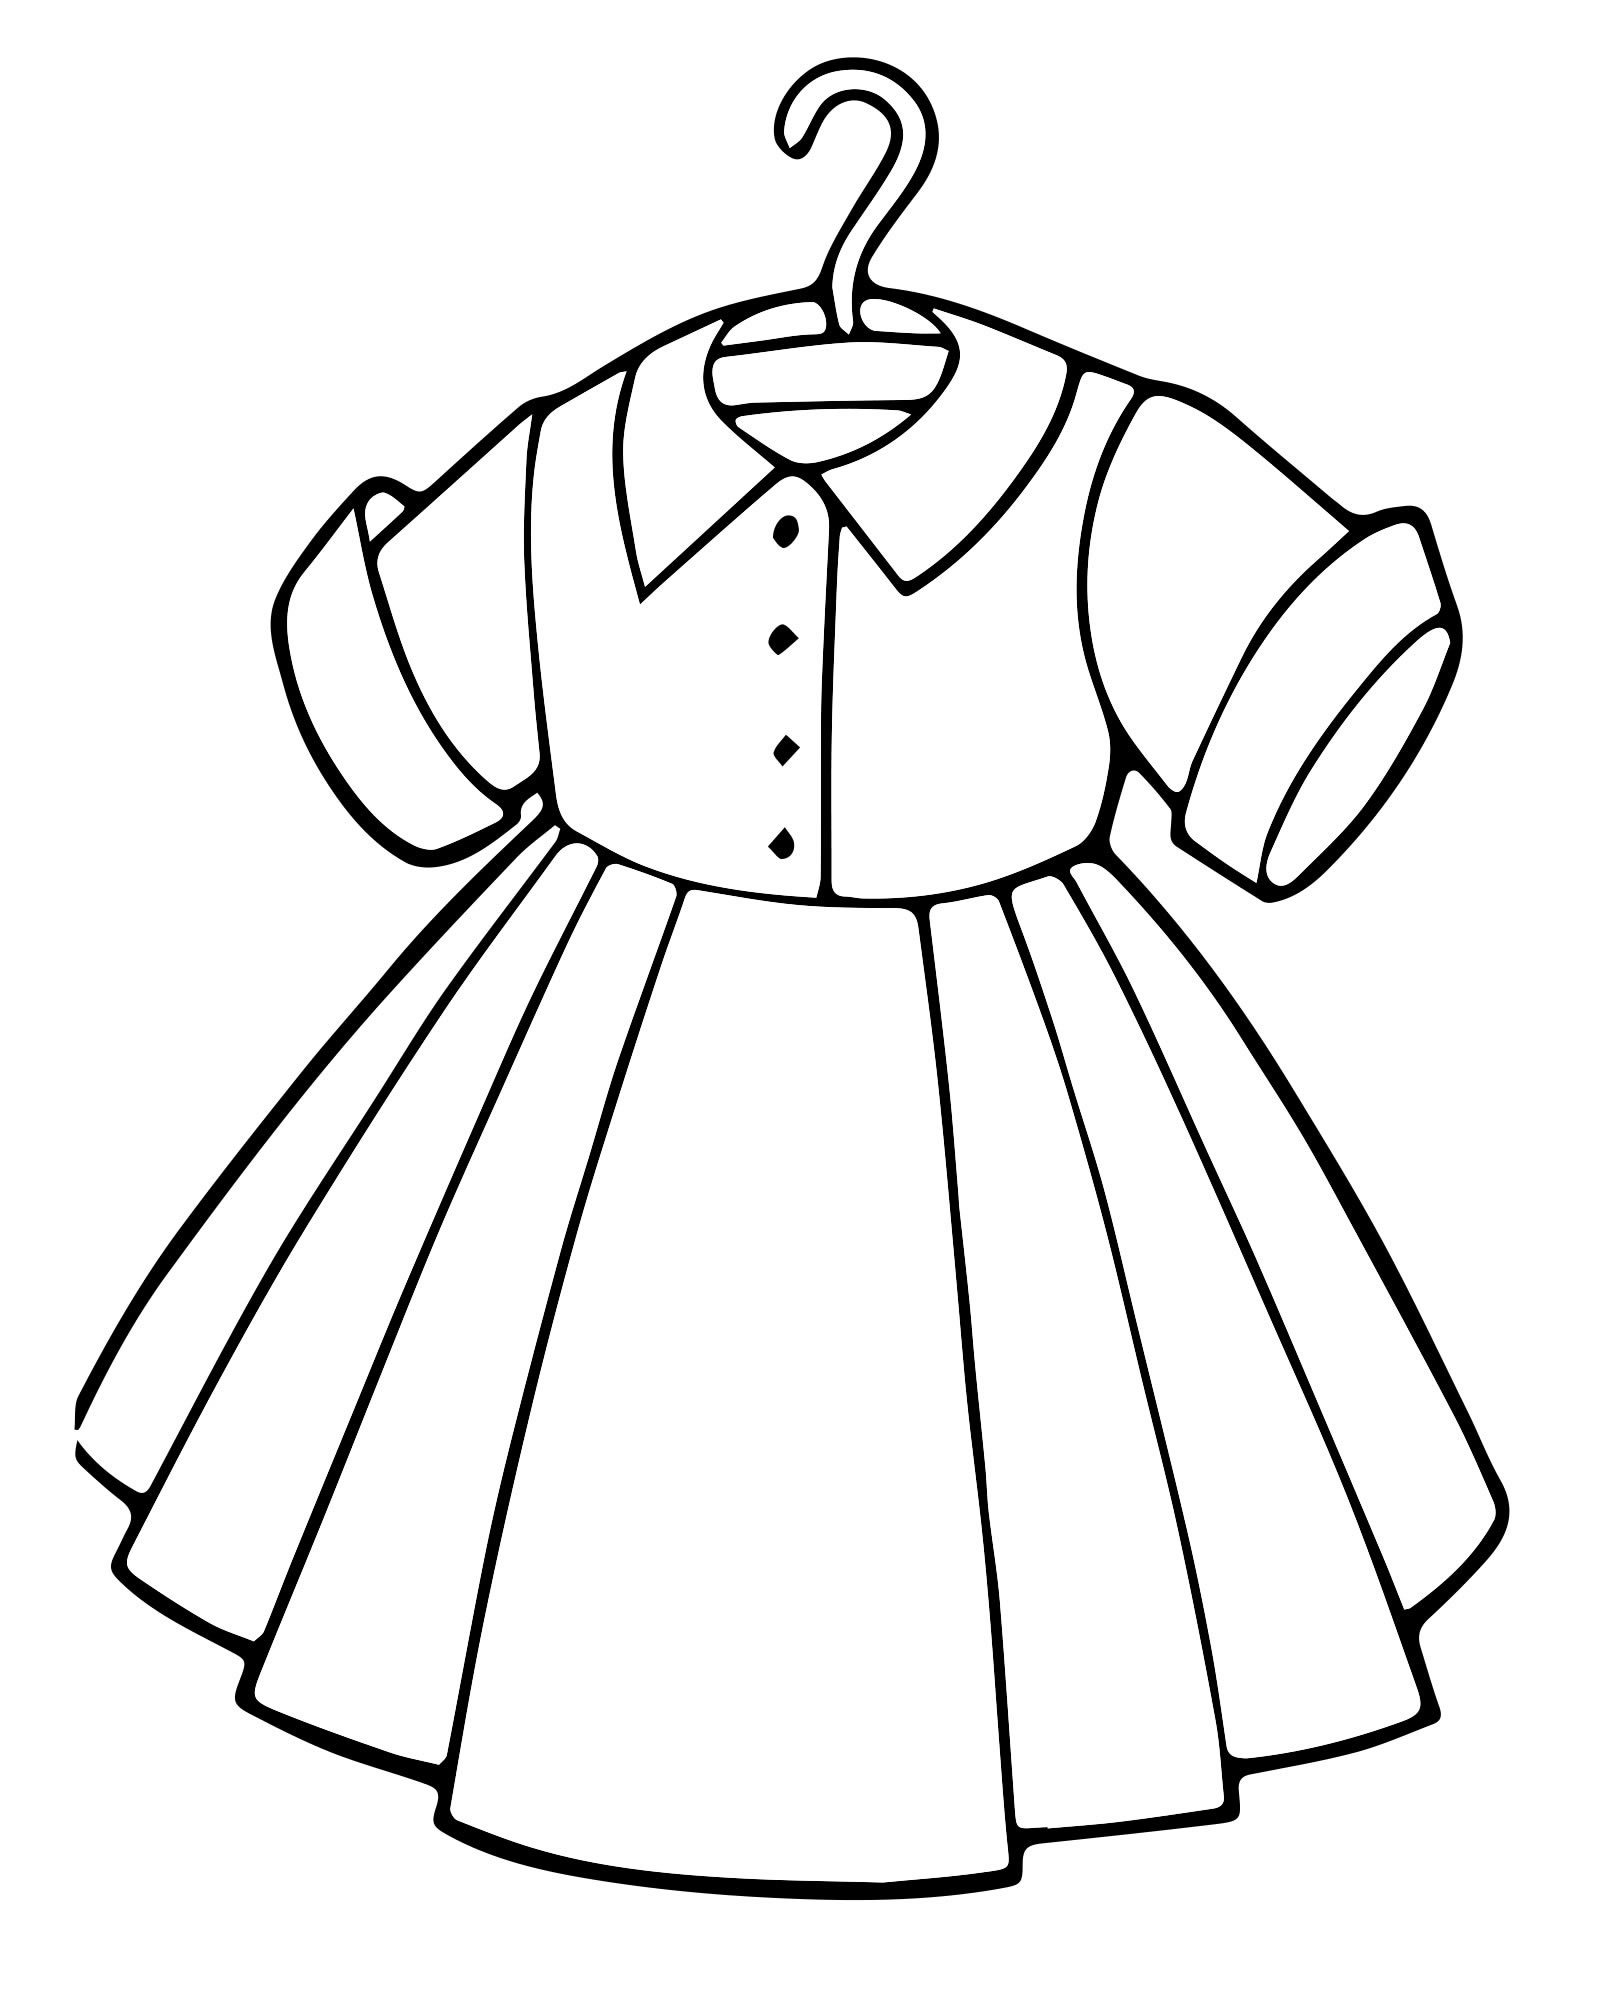 Раскраски платьев 4 года. Раскраска платье. Платье трафареты для детей. Платье раскраска для детей. Шаблон платья для рисования.